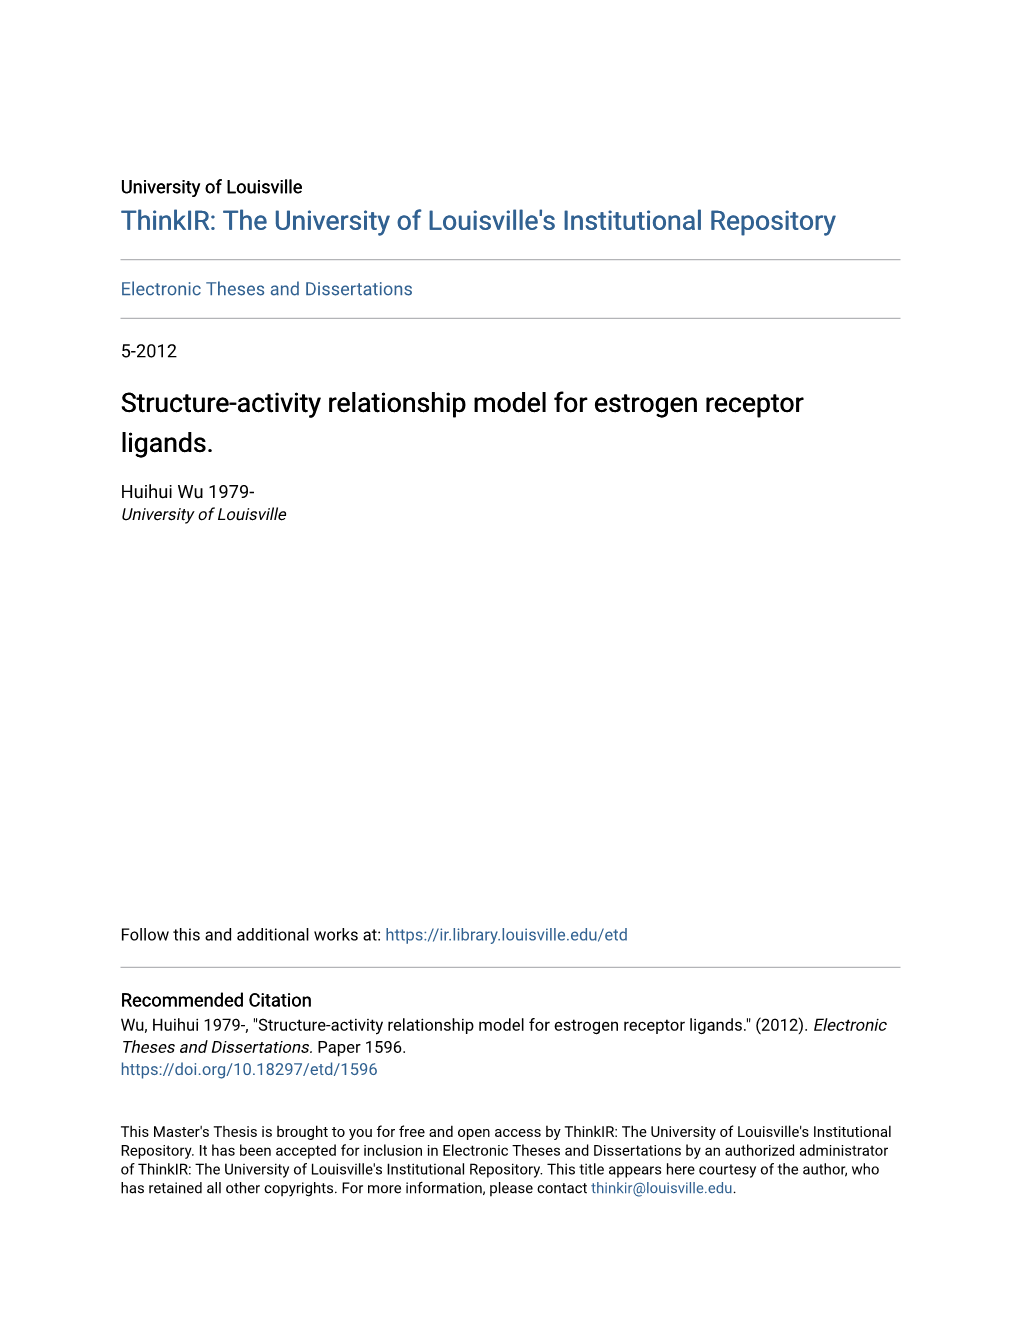 Structure-Activity Relationship Model for Estrogen Receptor Ligands